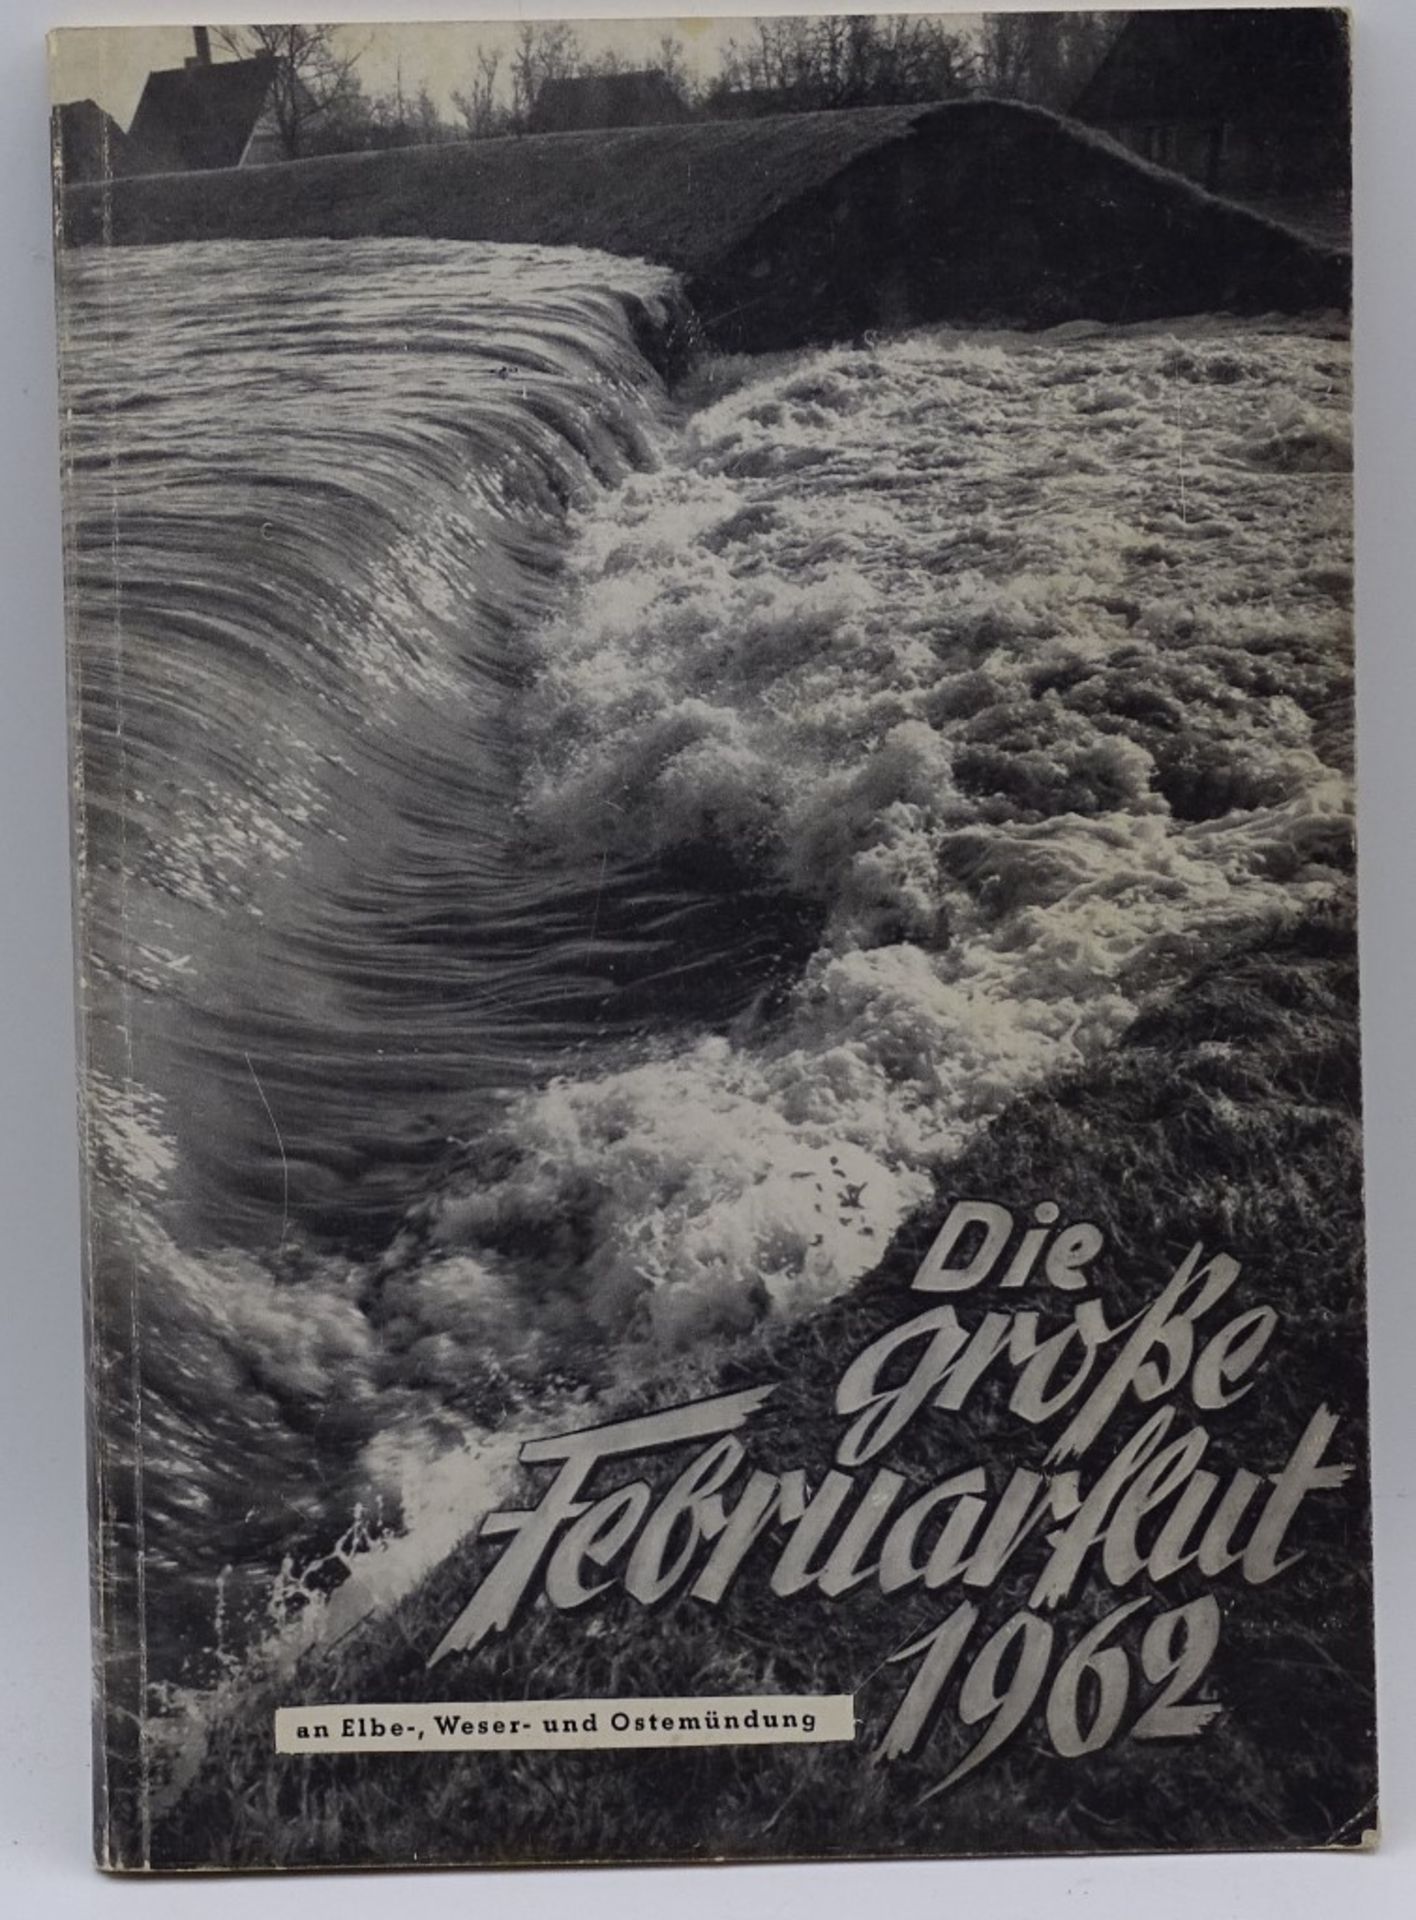 "Die große Februarflur 1962 an Elbe,Weser und Oste-Mündung"